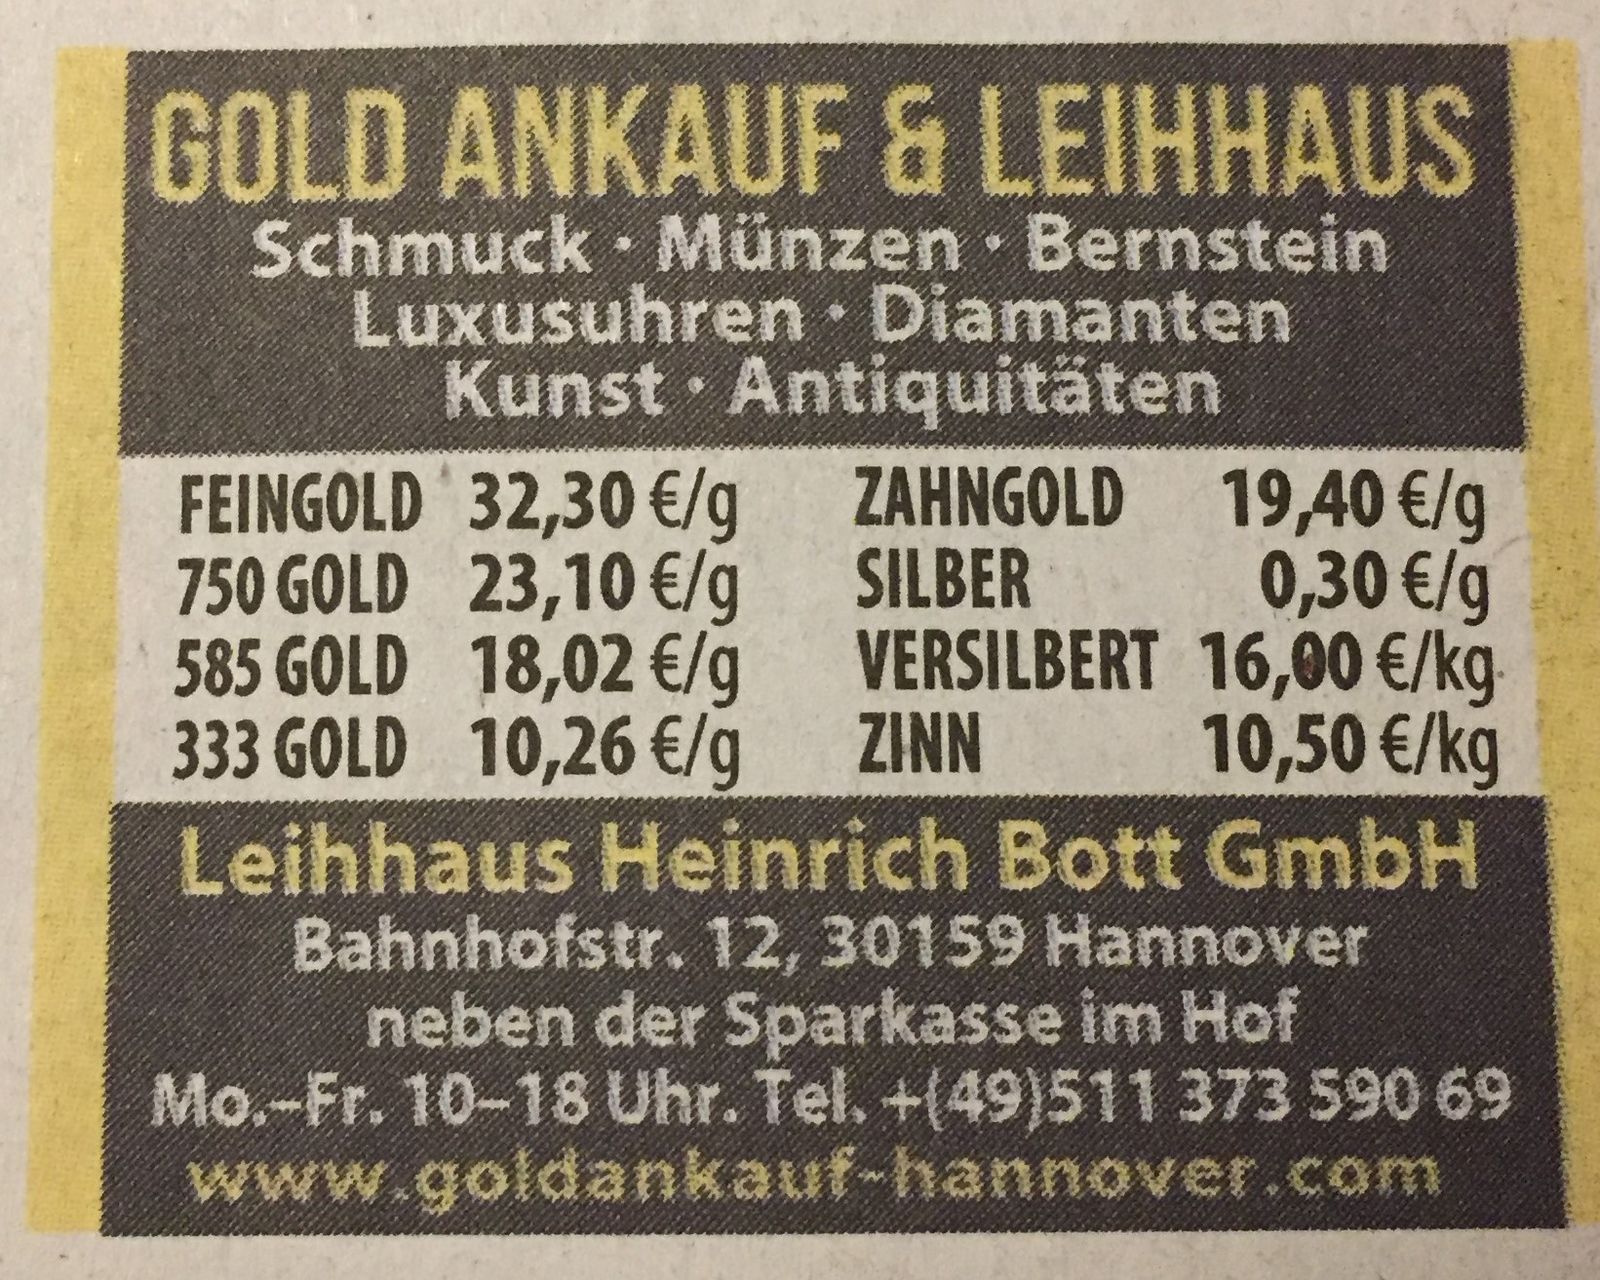 Heinrich Bott GmbH in Hannover ⇒ in Das Örtliche